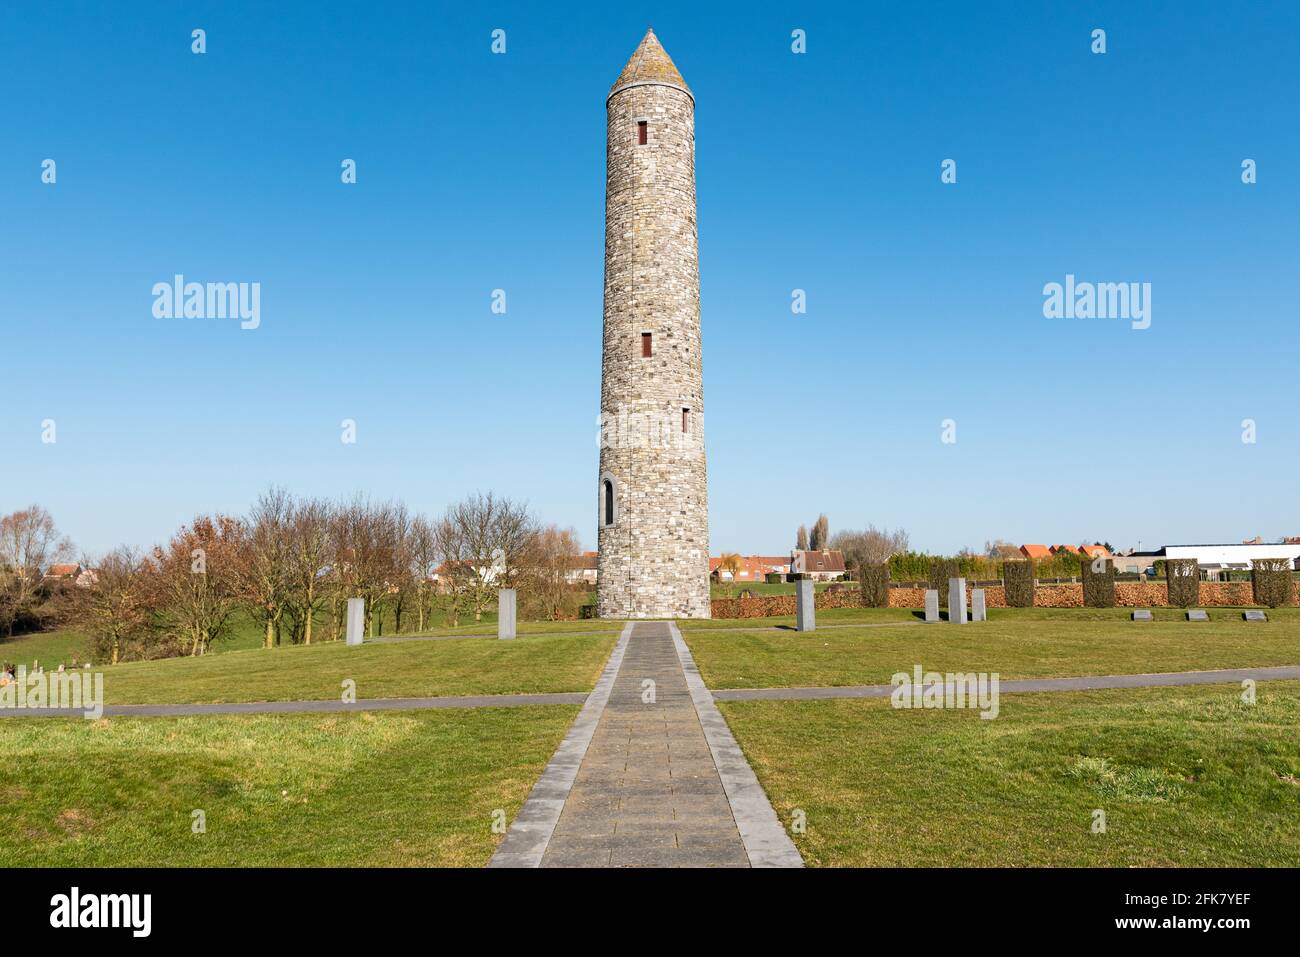 Mémorial du Parc de la paix de l'île d'Irlande à Messines, près d'Ypres en Flandre, Belgique. Banque D'Images